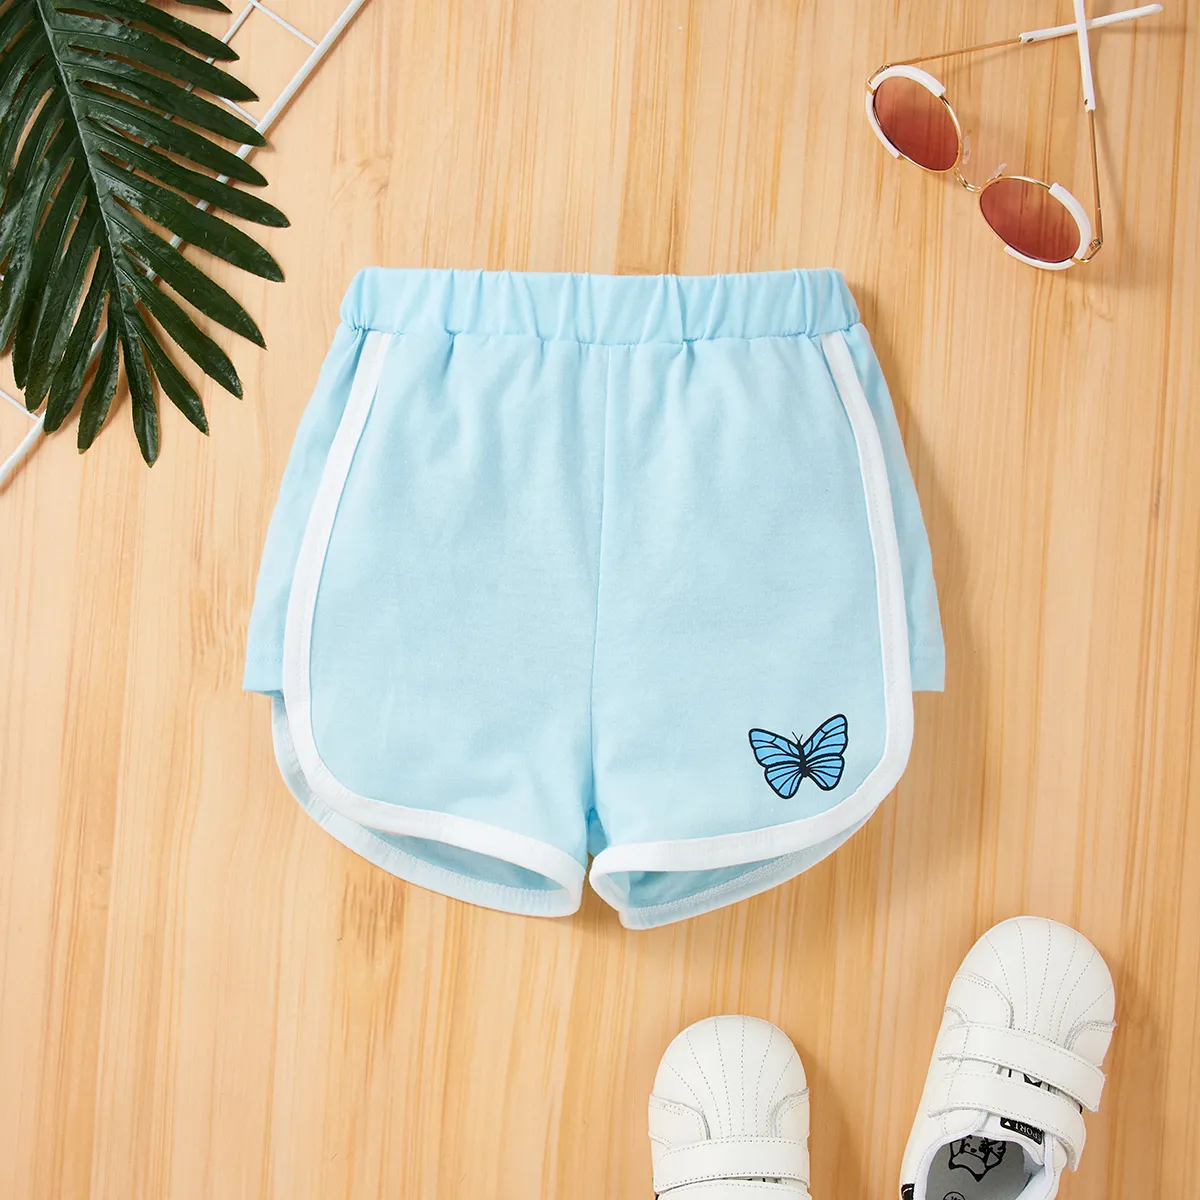 Kleinkinder Mädchen Lässig Schmetterling Shorts hellblau big image 1